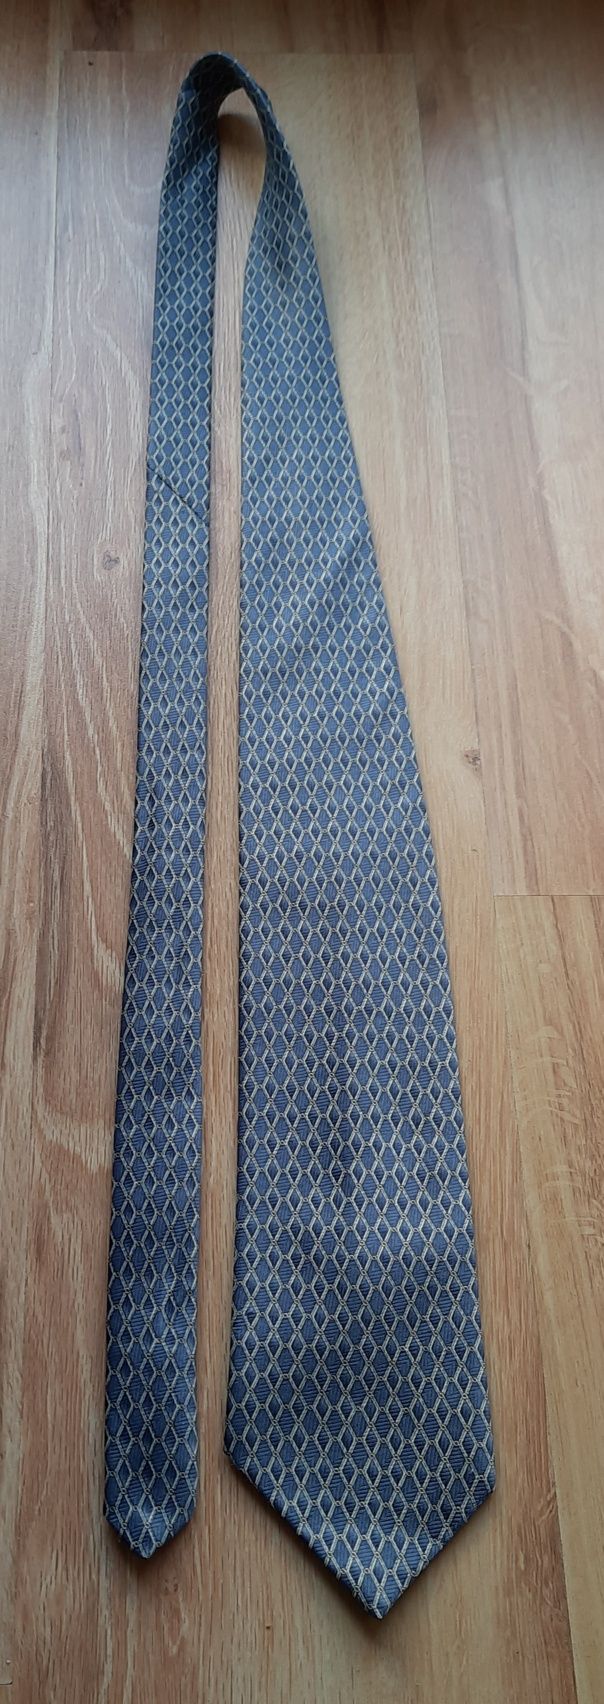 Krawat niebieski granatowy Piotr

Długość około 150 cm
Szerokość 10 cm